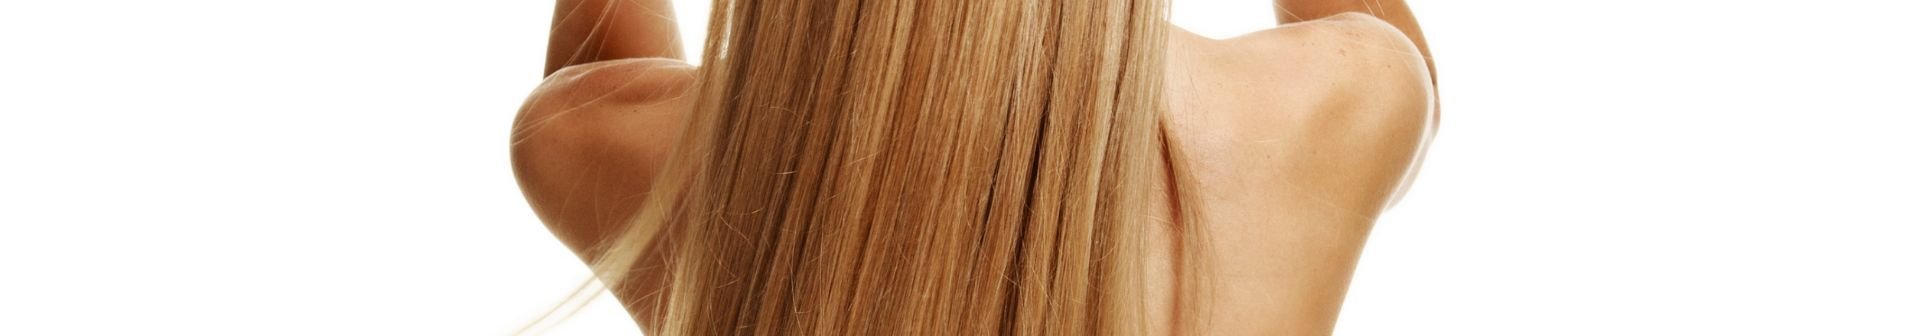 Cienkie włosy – pielęgnacja i stylizacja